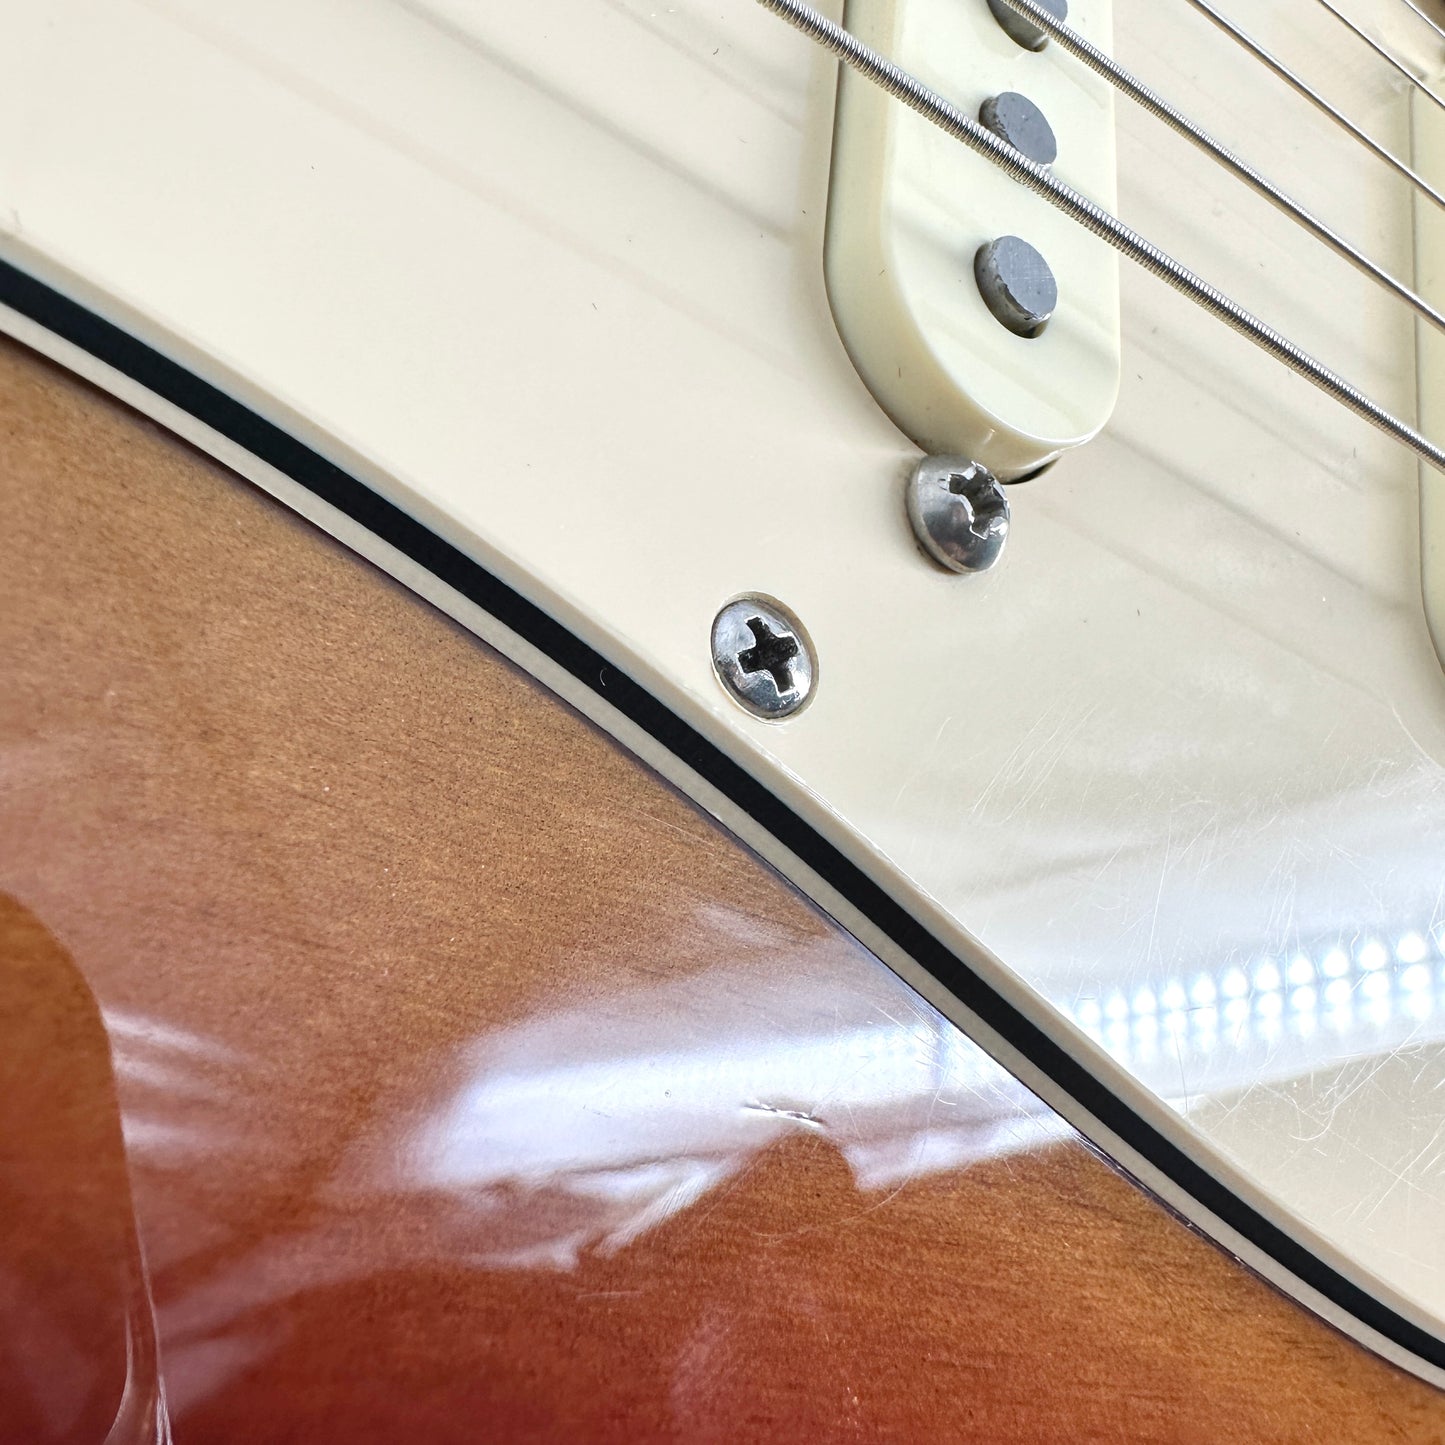 2006 Fender 60th Diamond Anniversary Commemorative American Stratocaster – Sunburst